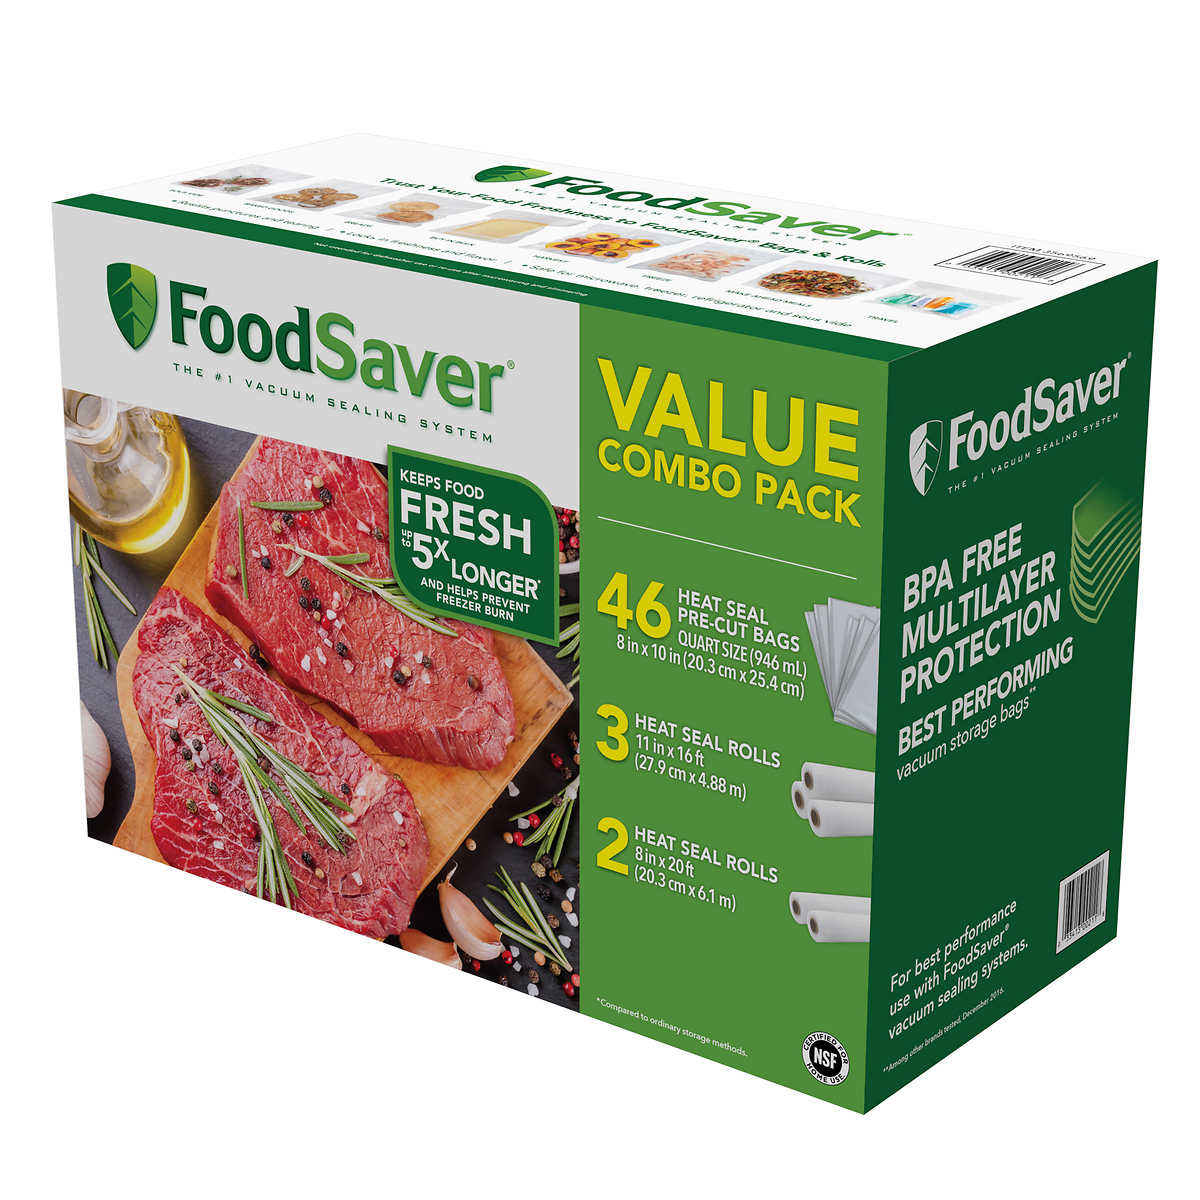 Vacuum Food Sealer Saver Seal Bags Storage Rolls Commercial Packing Home N1U3 